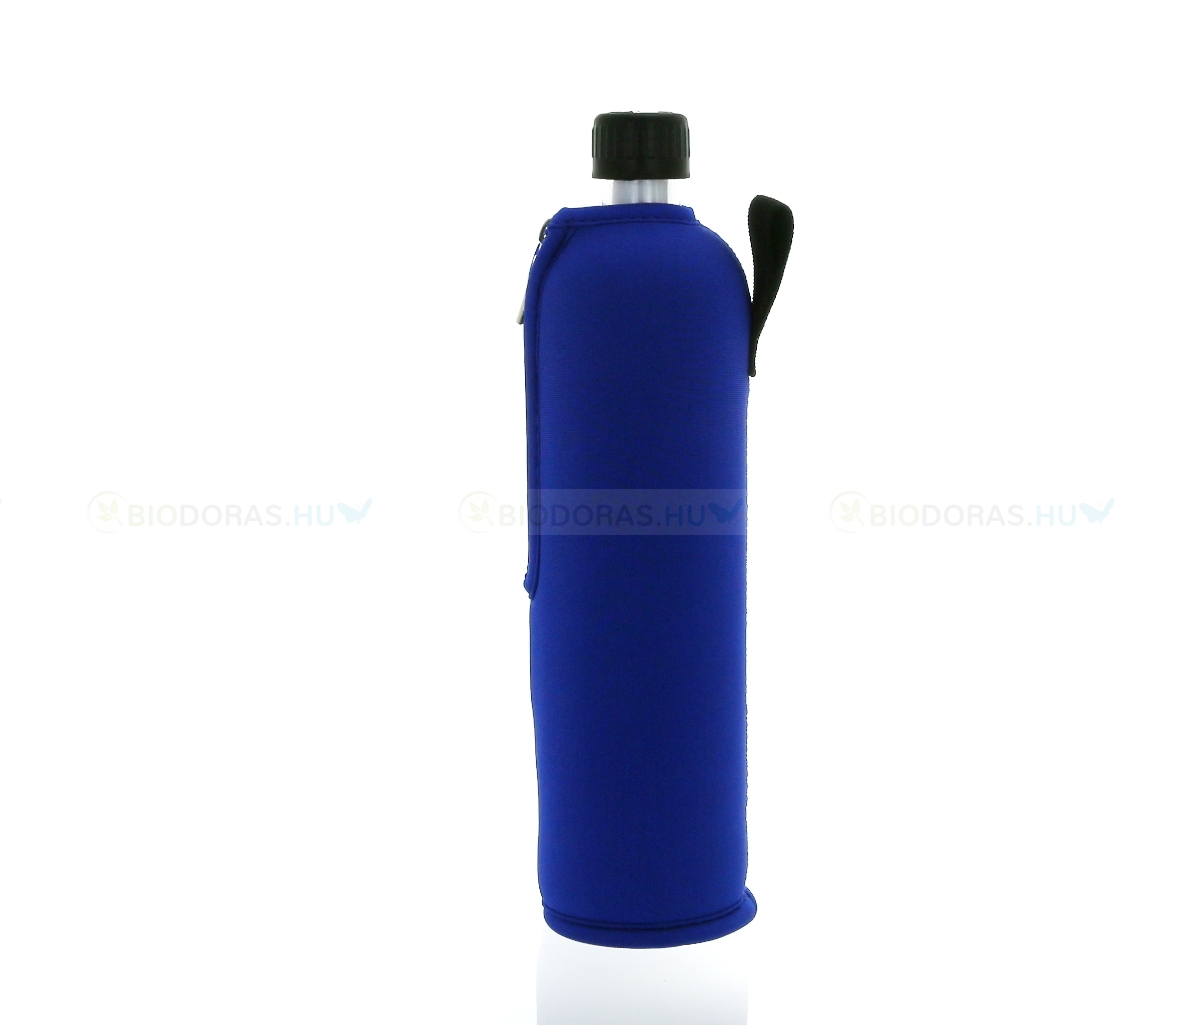 DORAS Üvegkulacs (üvegpalack) sötétkék színű neoprén huzattal - 500 ml